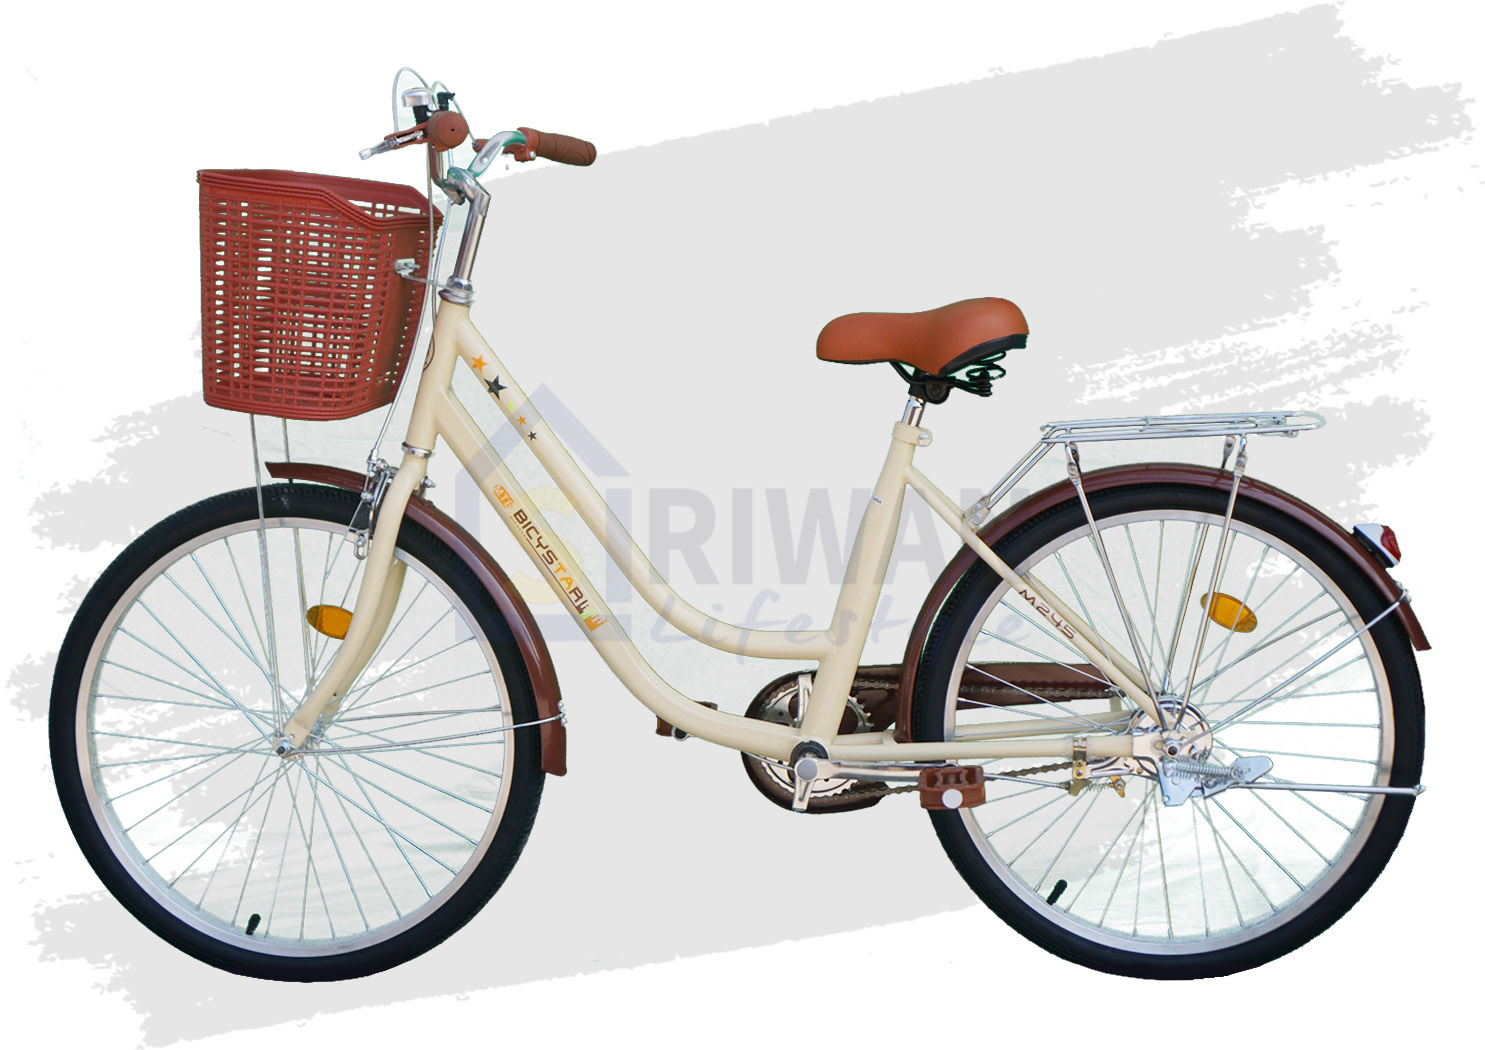 BICYSTAR จักรยานแม่บ้าน เฟรมเหล็ก ล้อ 24” ไม่มีเกียร์ น้ำหนัก 15 กก. รุ่น CB078(ปี2021)